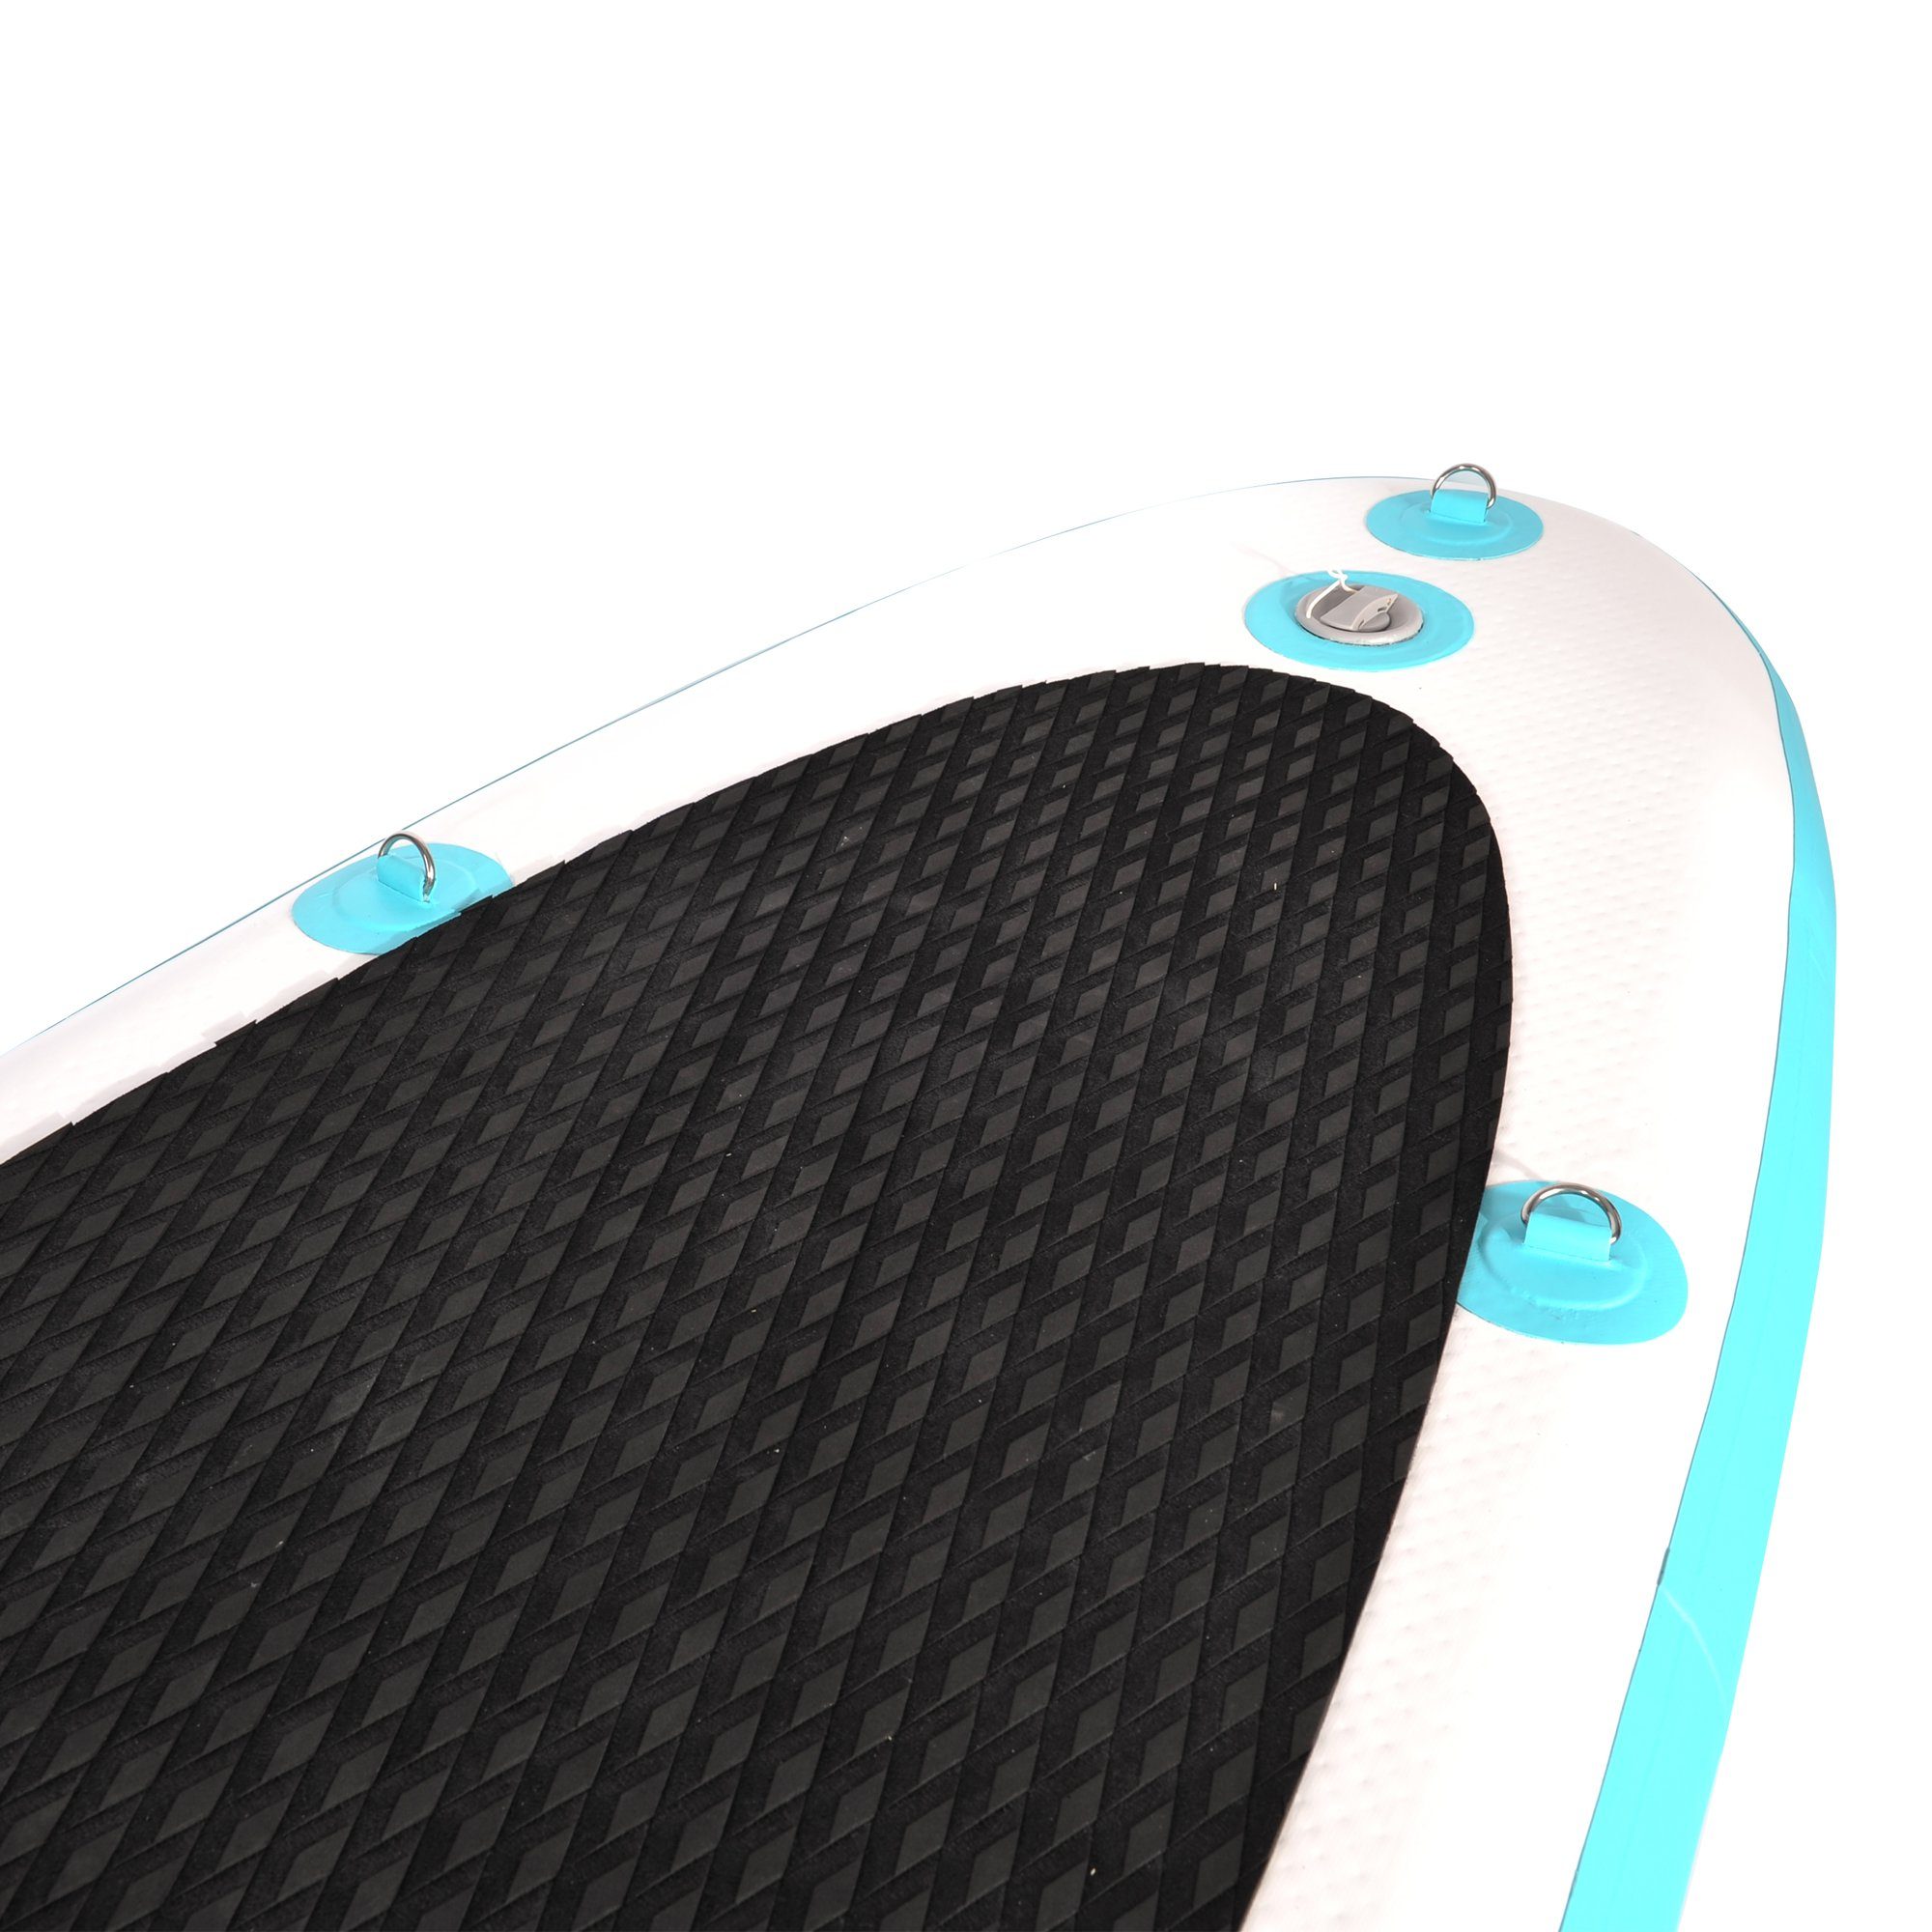 NEMAXX Inflatable SUP-Board, Stand Paddel Tasche, - Nemaxx - 320x78x15cm, up Surfbrett, Surf-Board Paddle inkl. transportieren türkis/gelb zu PB320 & Board aufblasbar leicht 